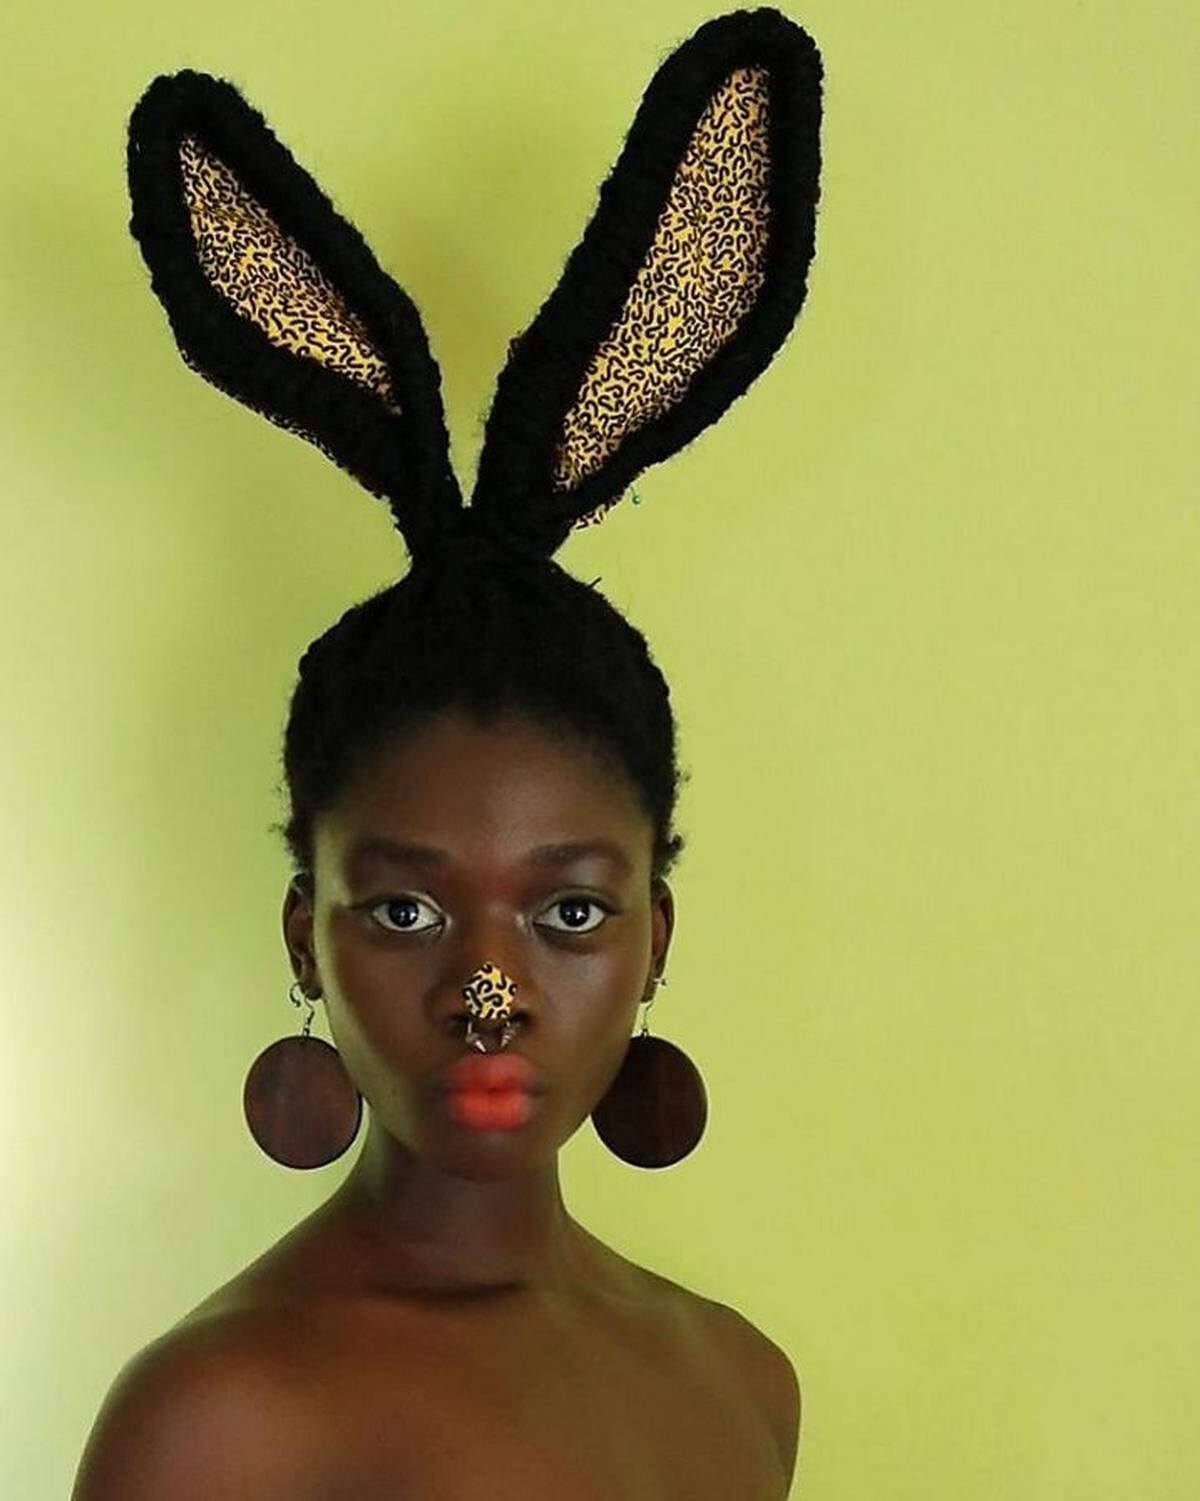 Die 21-Jährige erzählte dem Onlinemedium "Huffington Post", dass sie von historischen Frisuren von Frauen in bestimmten afrikanischen Stämmen inspiriert worden sei: "Es waren wirklich eindrucksvolle und kunstvolle Frisuren, die mich dazu inspirierten, Haarstyling als Ausdrucksform zu nutzen."